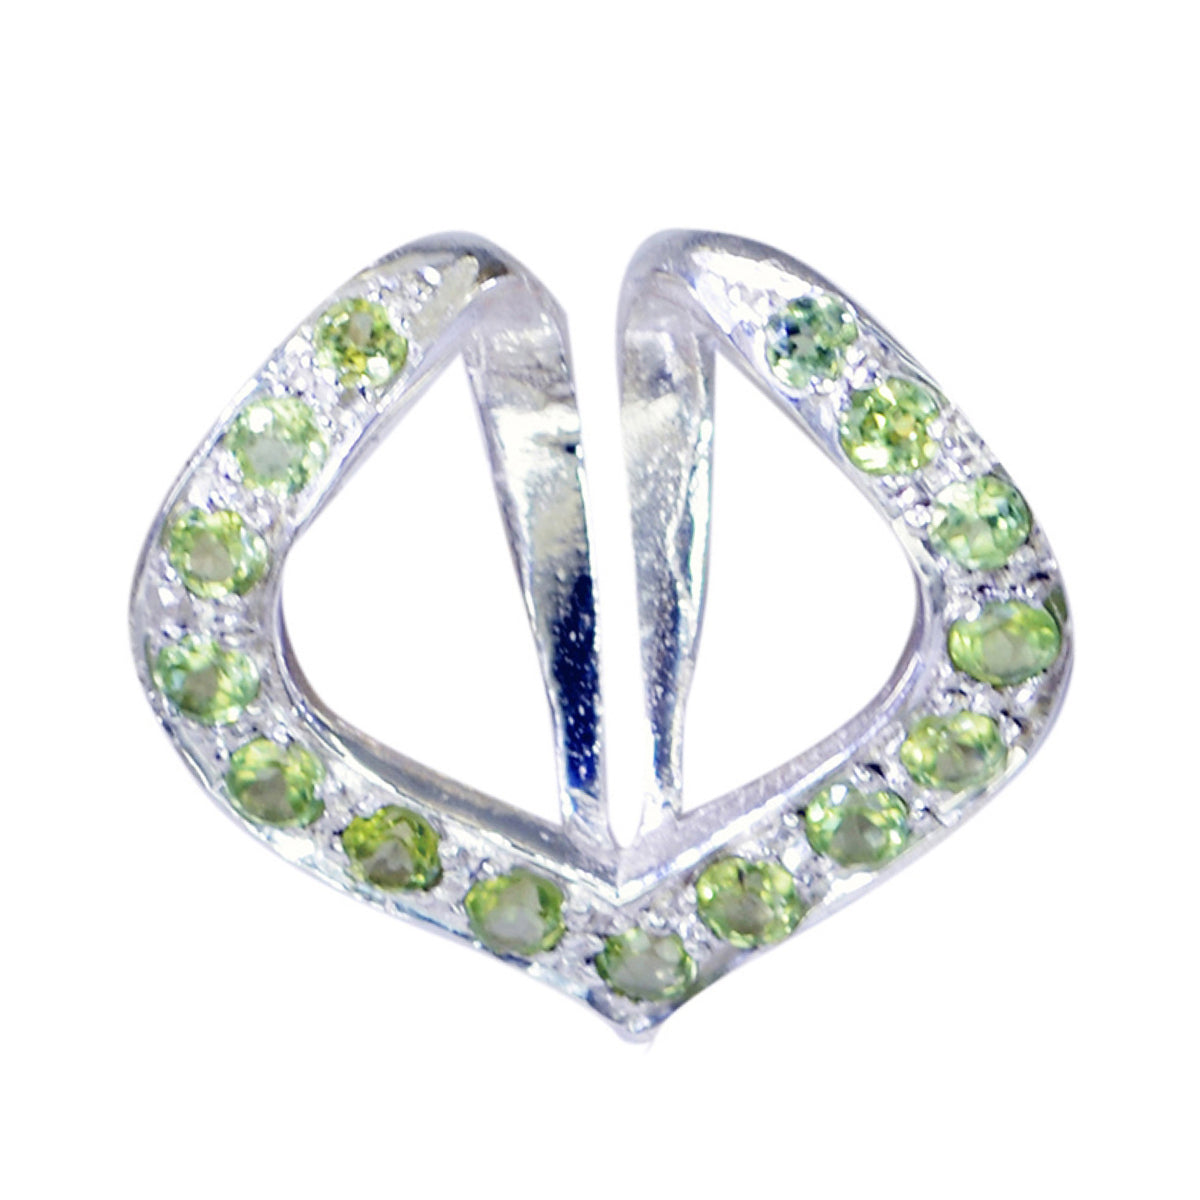 Riyo elegantes gemas redondas facetadas peridoto verde colgante de plata maciza regalo para boda